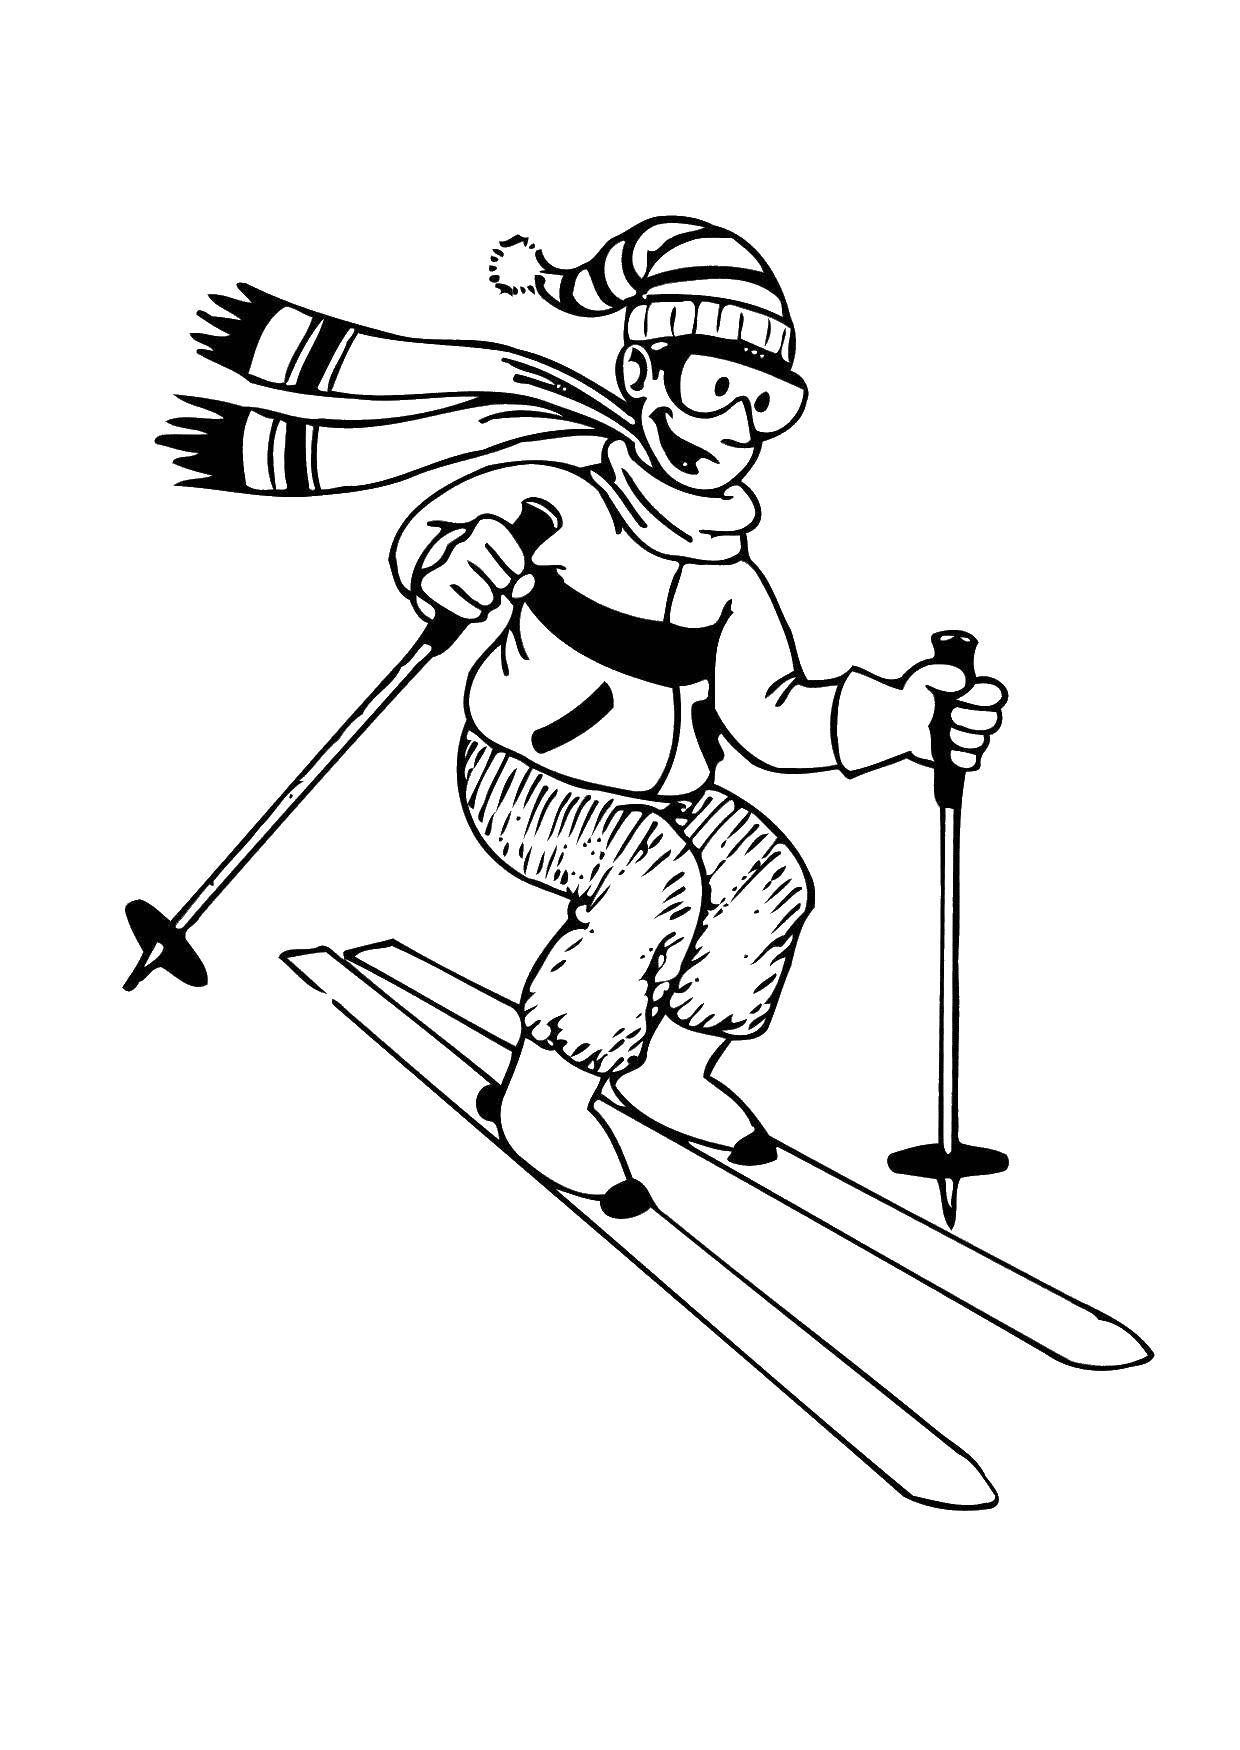 Лыжник рисунок